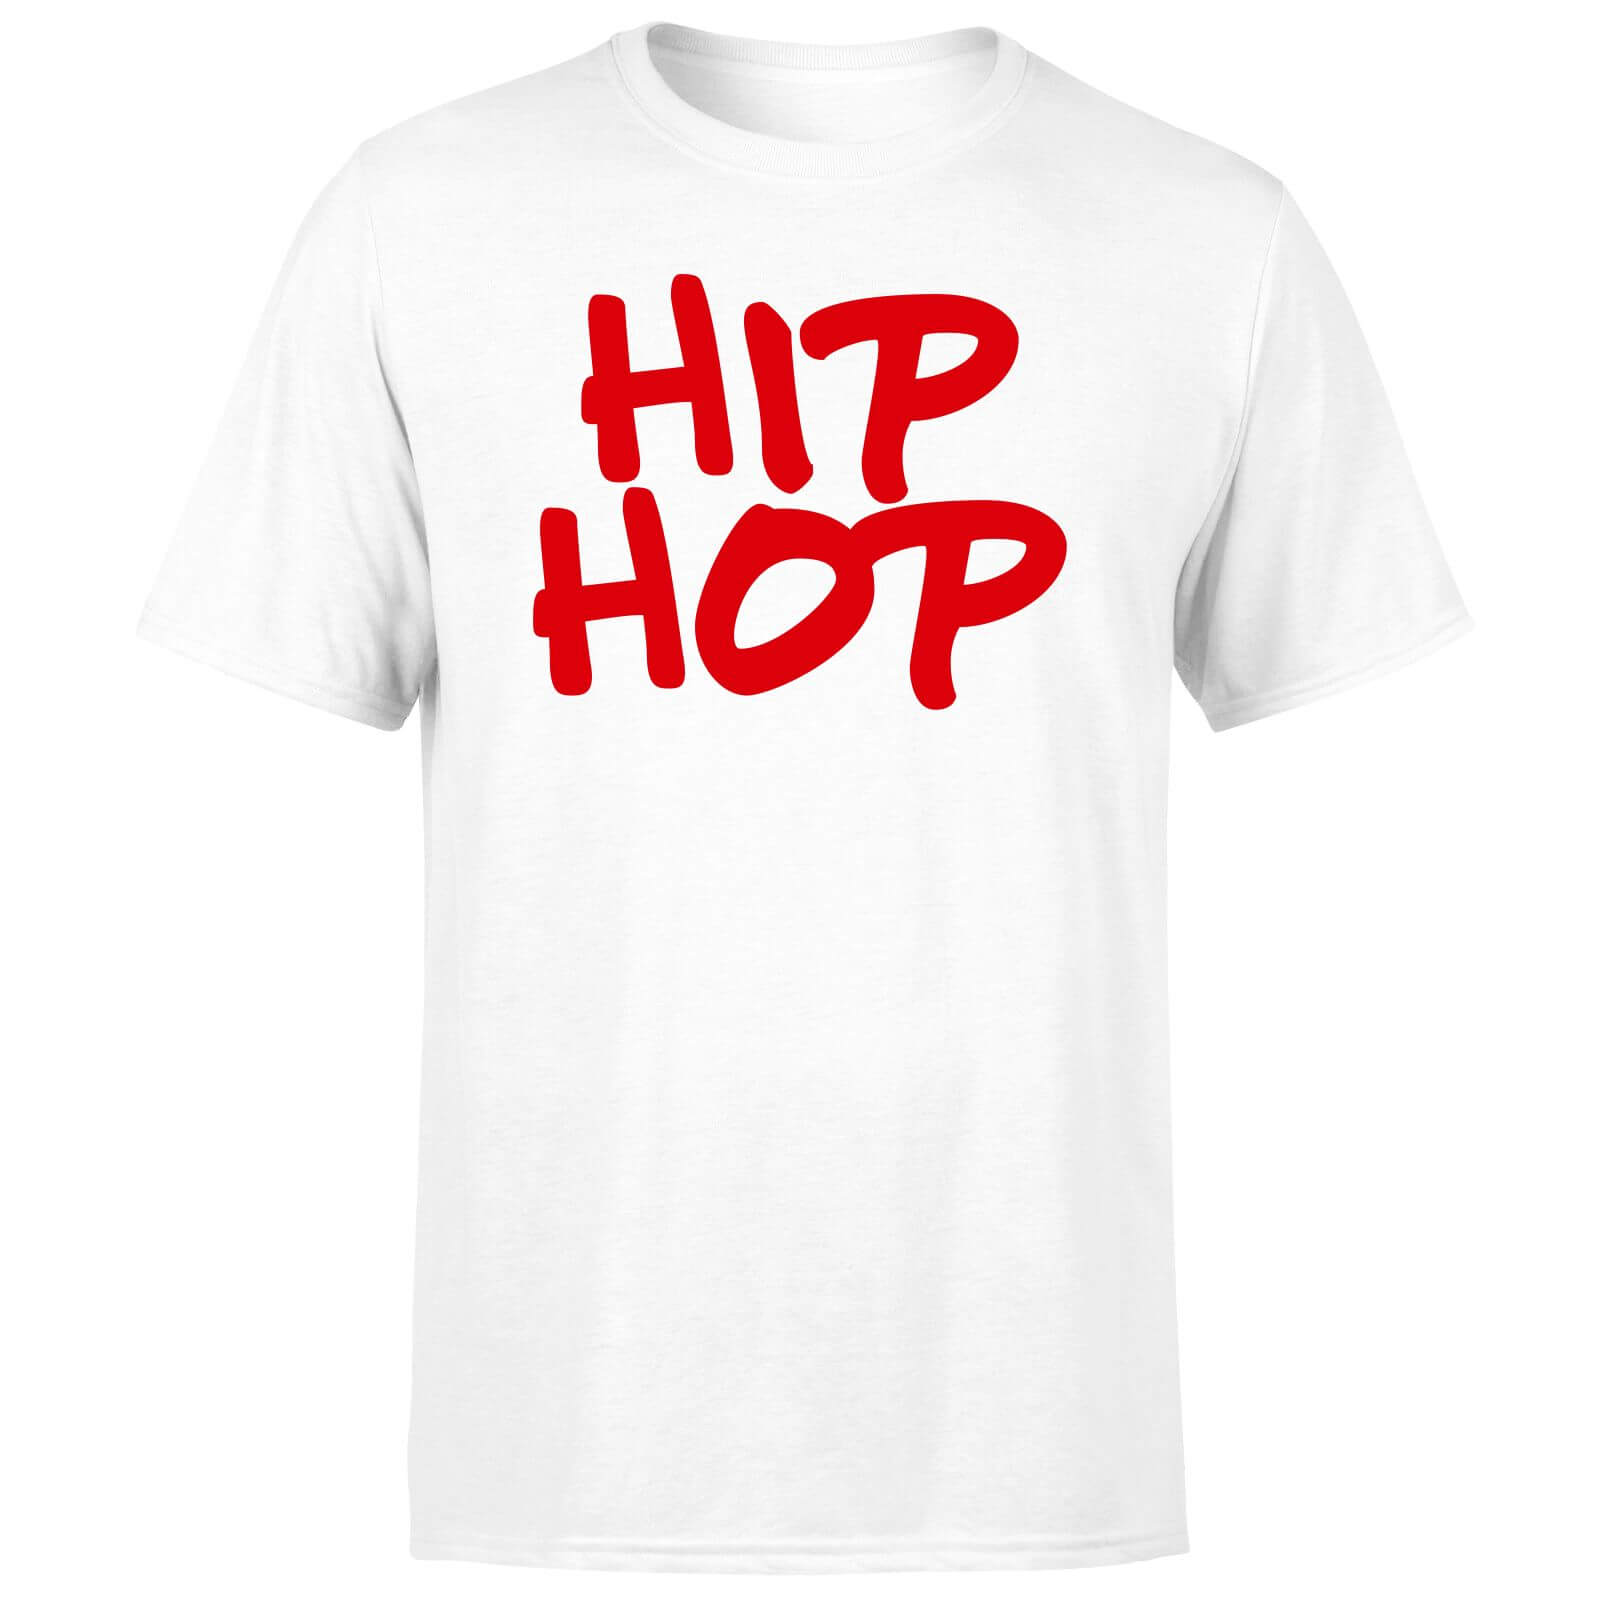 Hip Hop Men's T-Shirt - White - XS - White